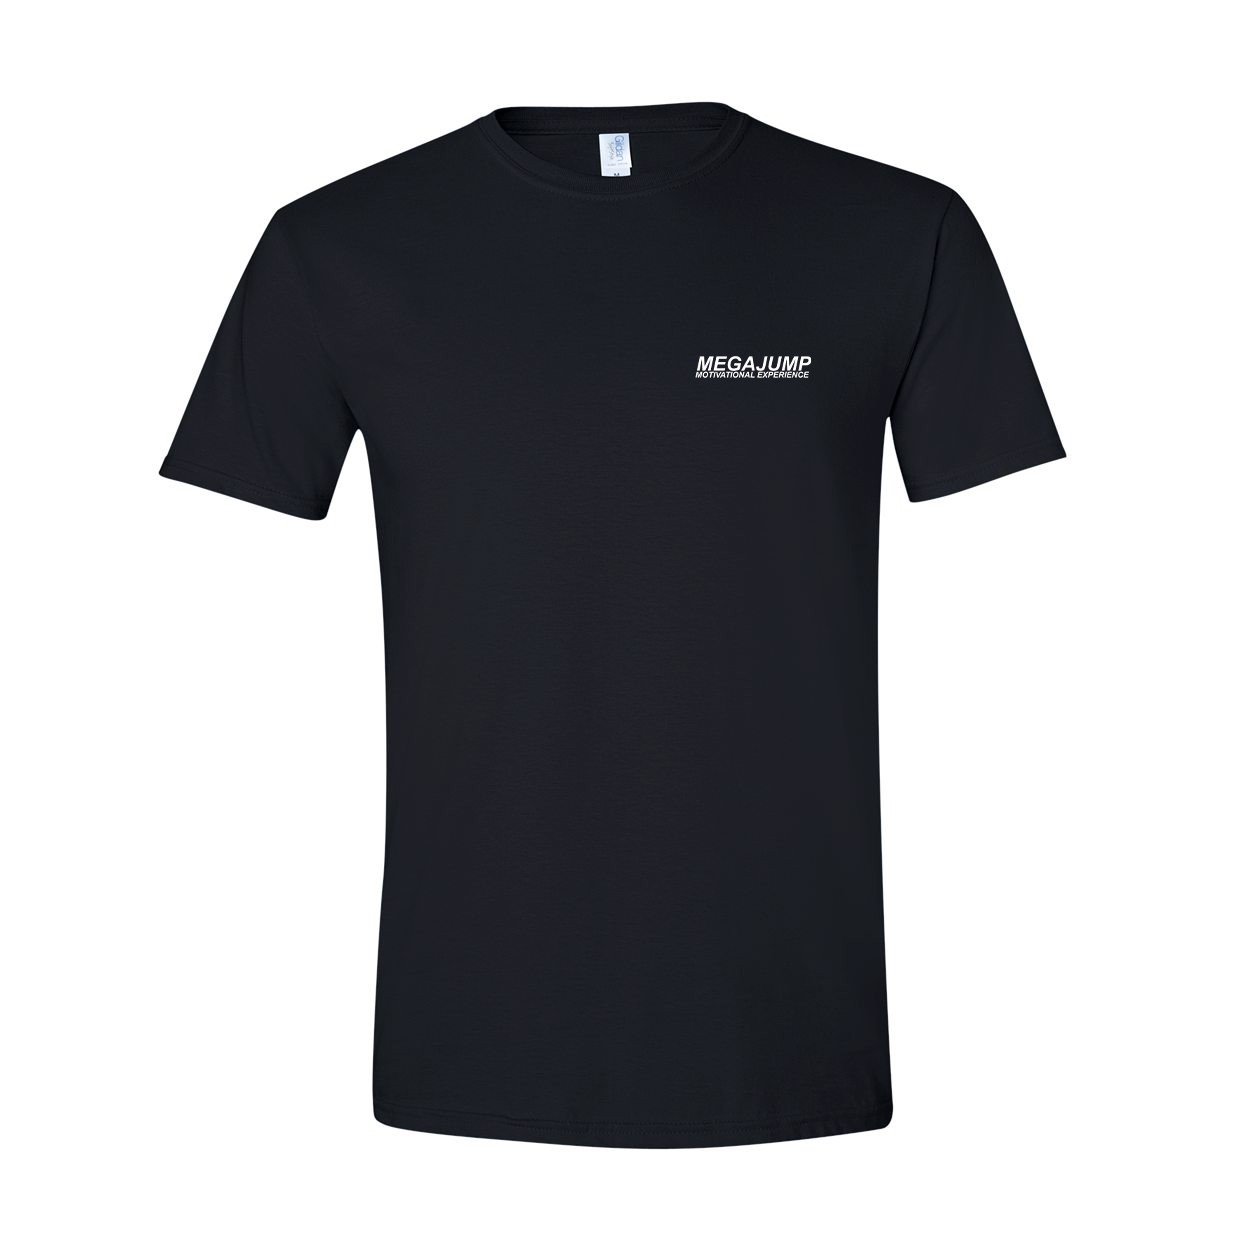 Mega Jump Night Out T-Shirt Black (White Logo)